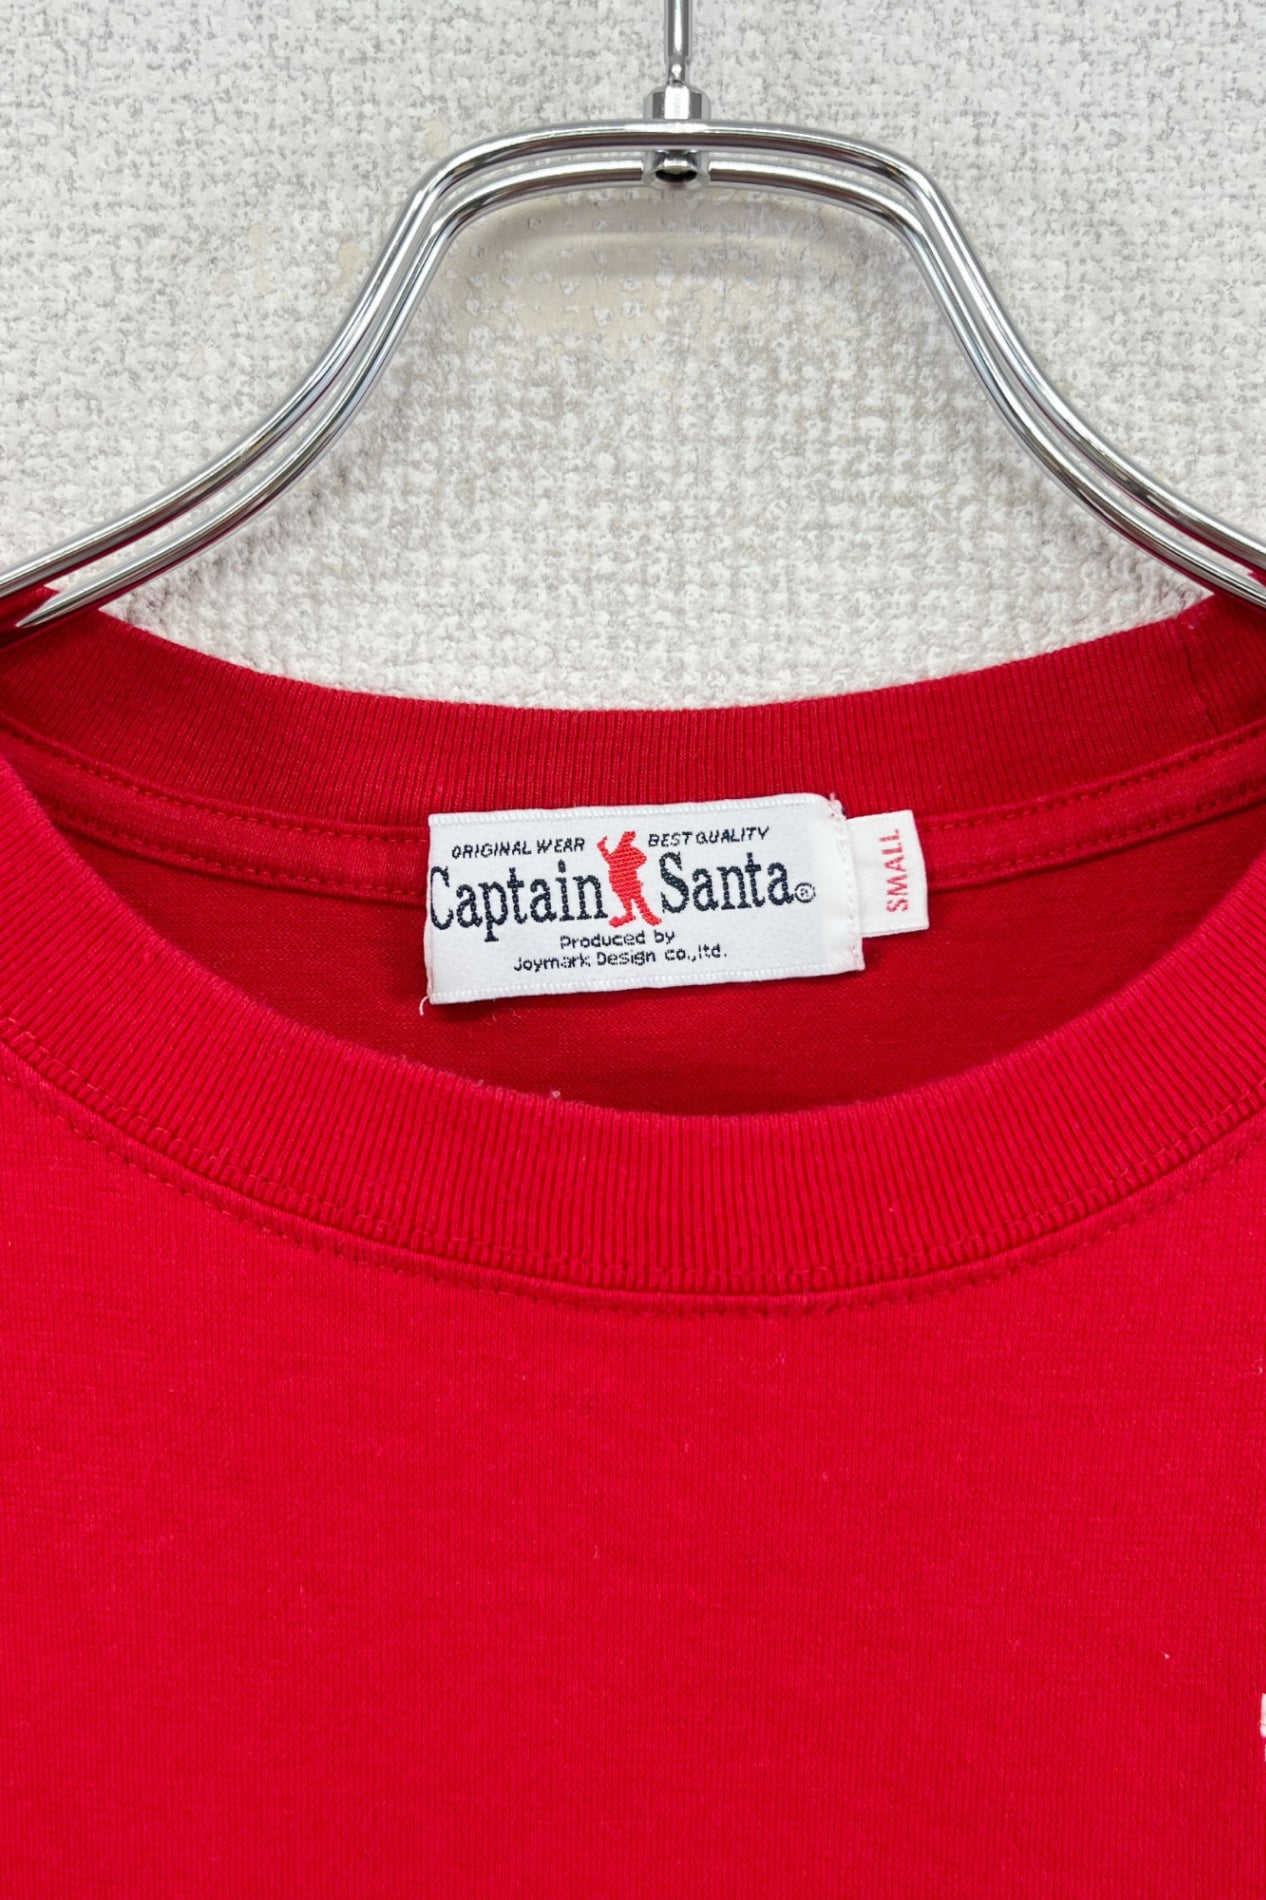 Captain Santa T-shirt